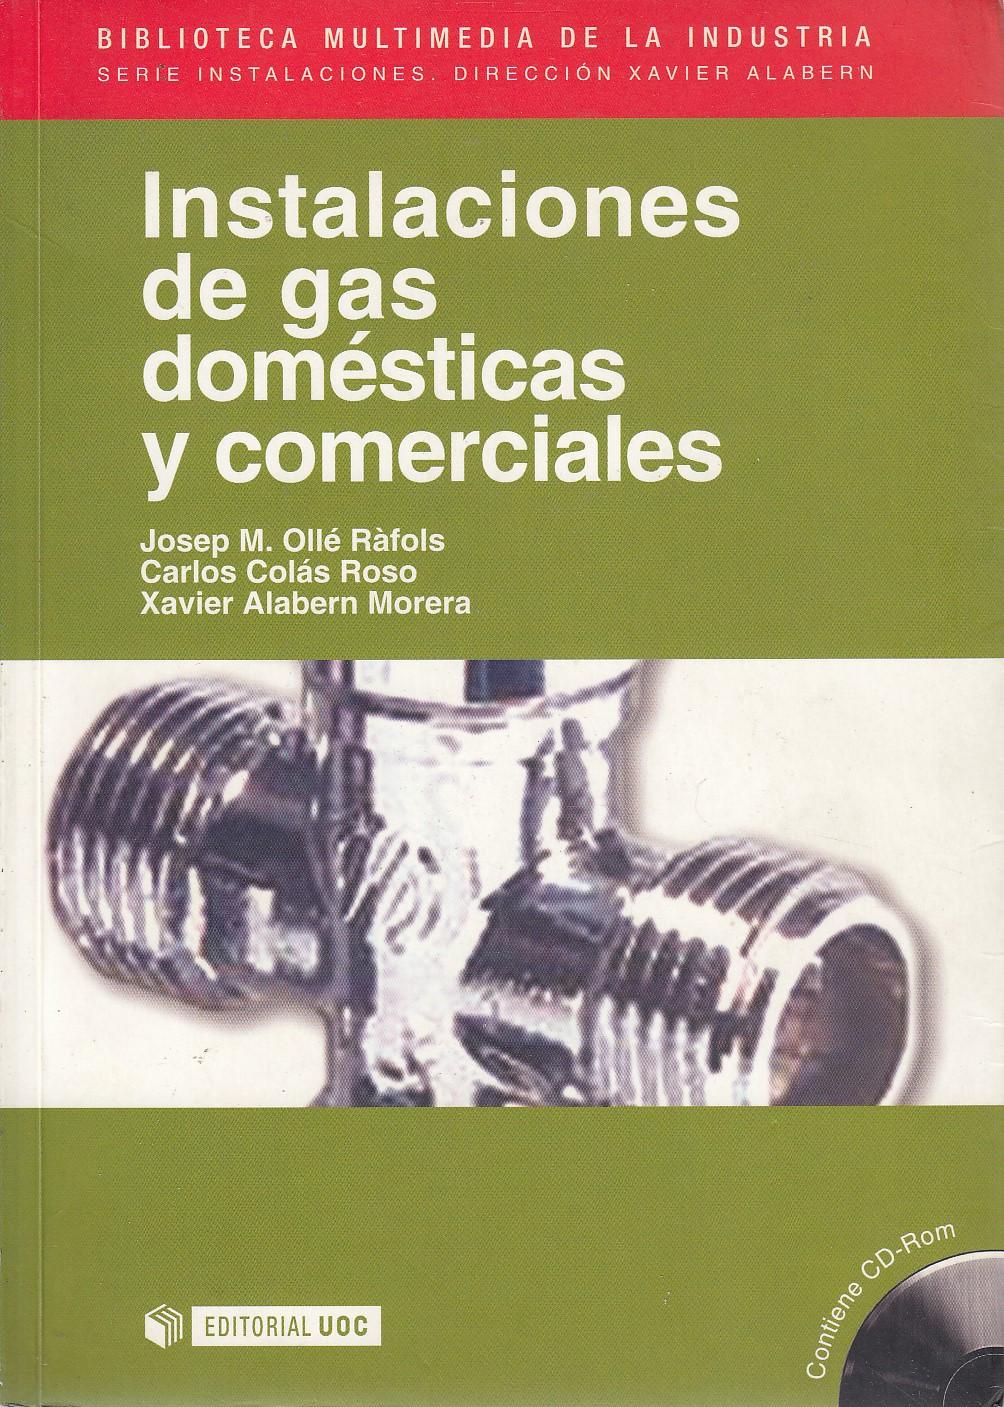 INSTALACIONES DE GAS DOMÉSTICAS Y COMERCIALES Contiene CD-ROM - Josep M. Ollé Ràfols - Carlos Colás Roso - Xavier Alabern Morera